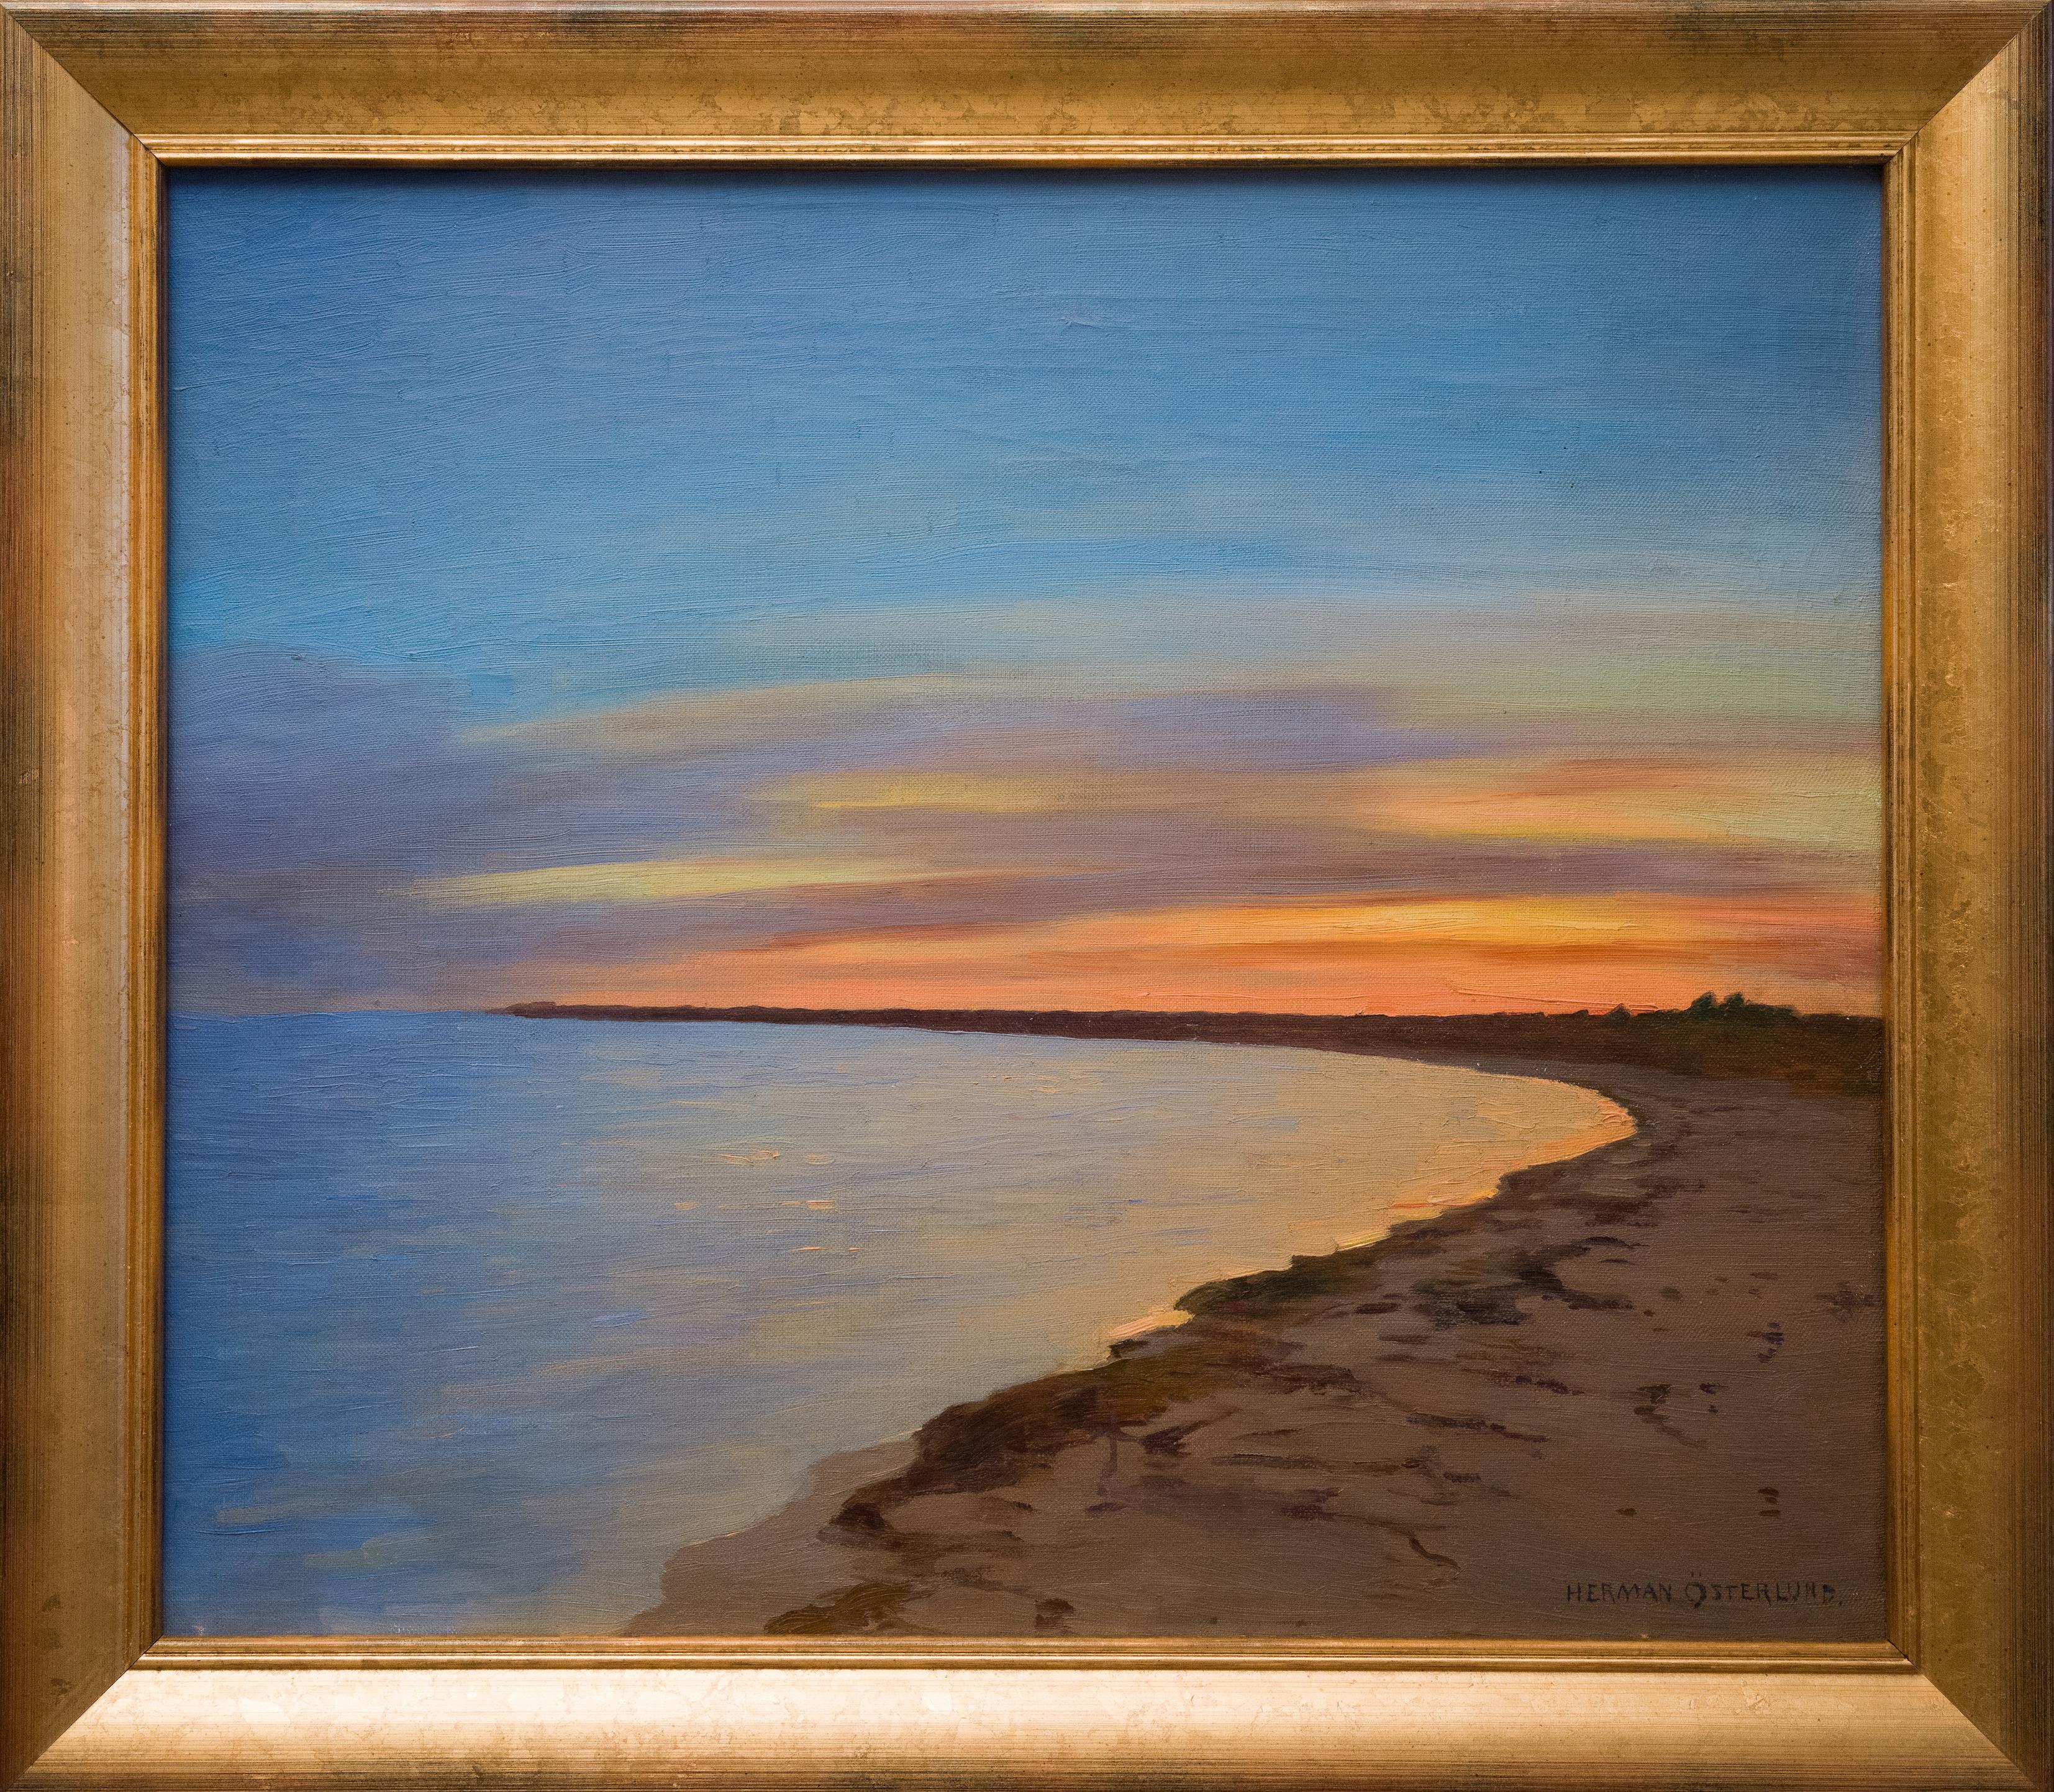 Herman Österlund était un artiste suédois surtout connu pour ses magnifiques représentations de la côte ouest de la Suède. 
Il s'installe à Stockholm en 1896 et réussit le test d'entrée à l'Académie royale ; à cette époque, il partage un studio avec